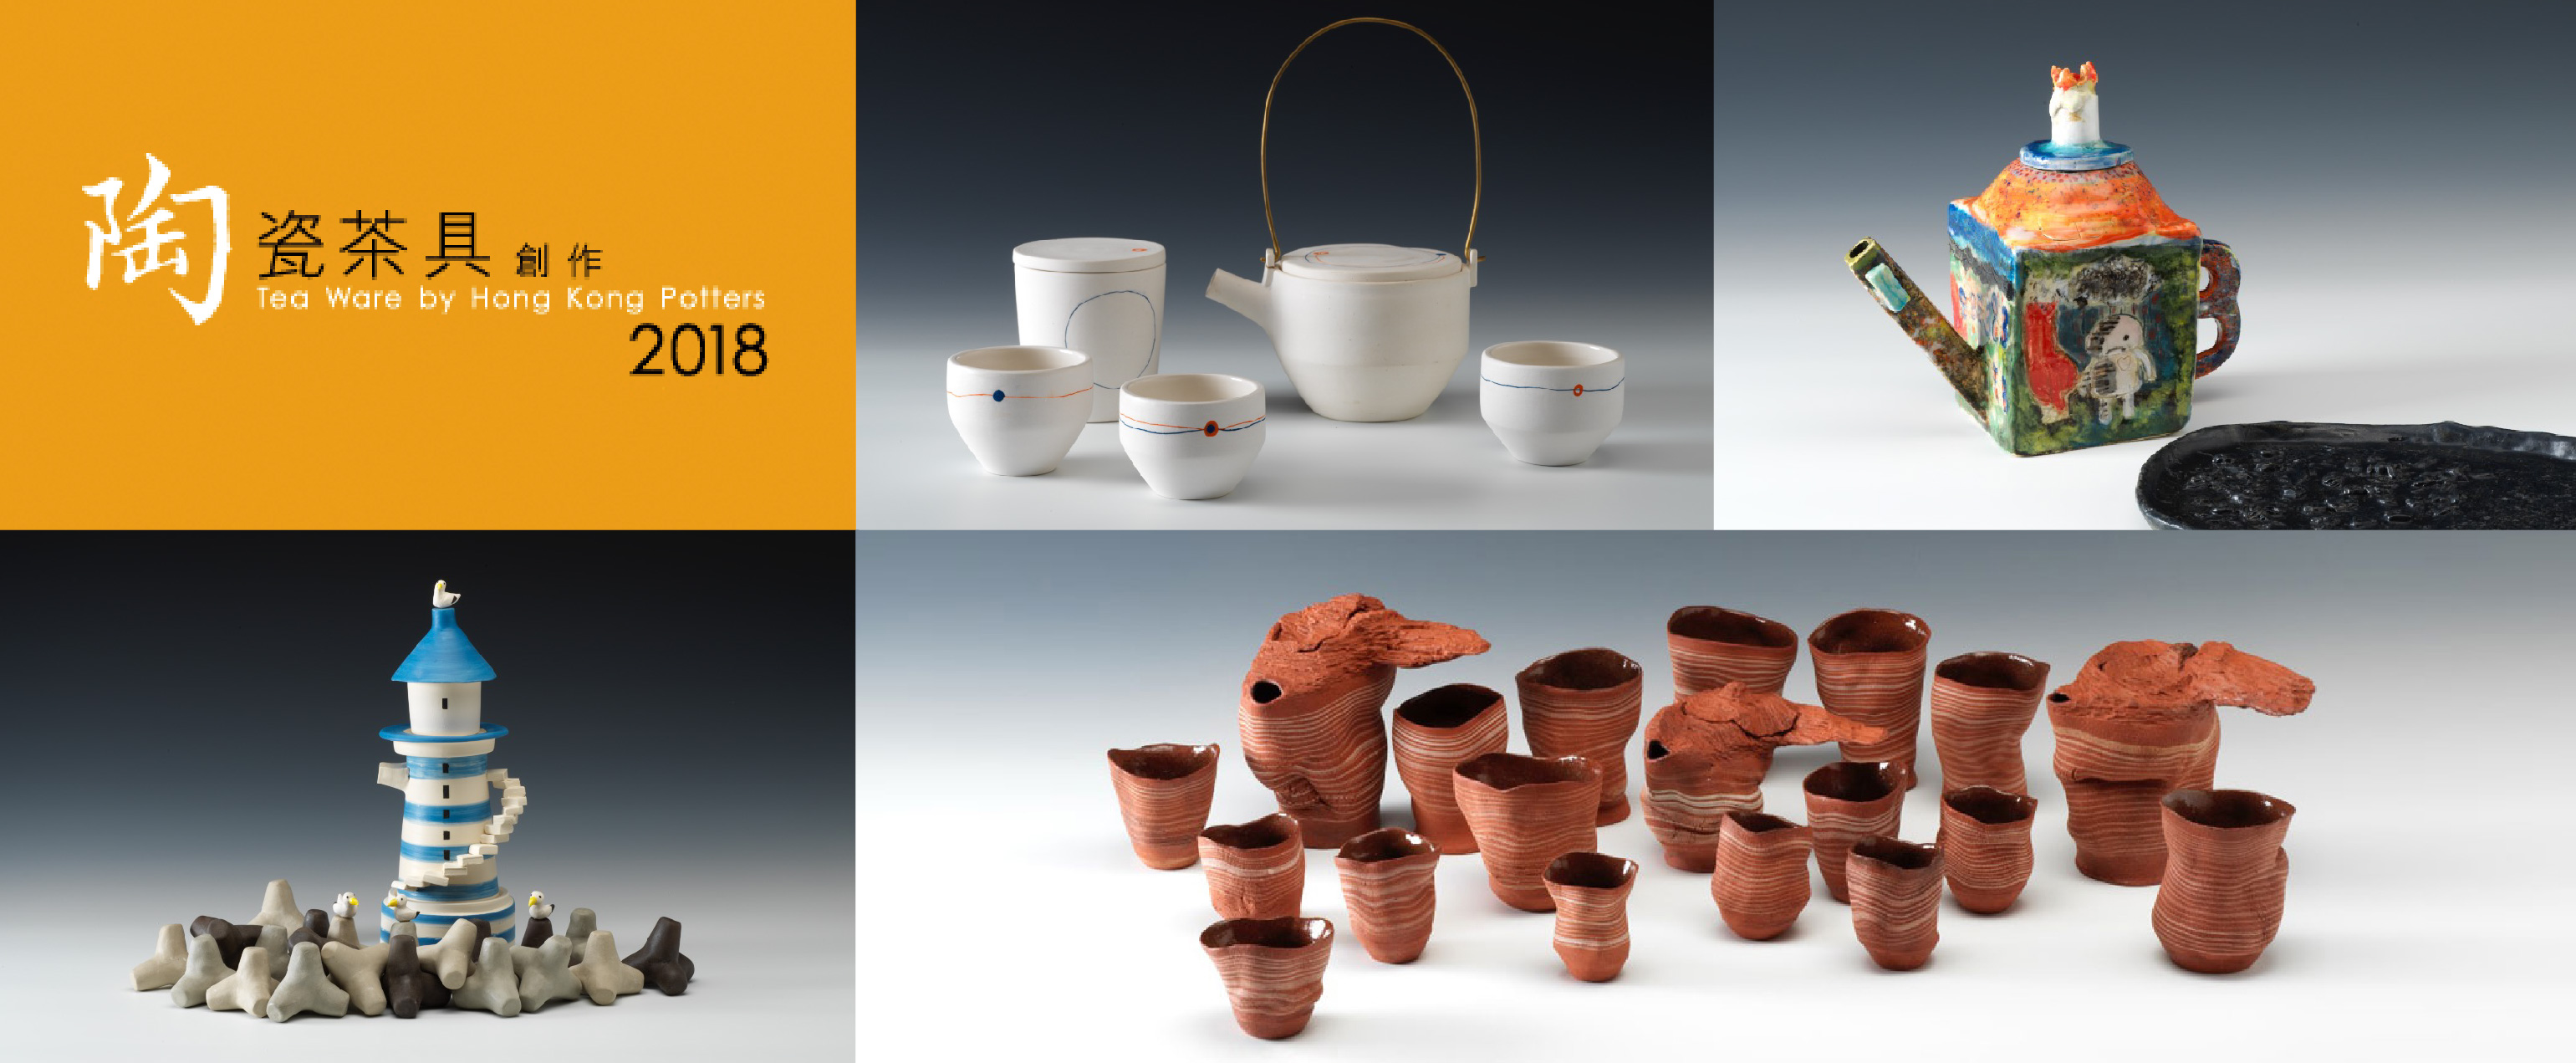 2018 Tea Ware by Hong Kong Potters